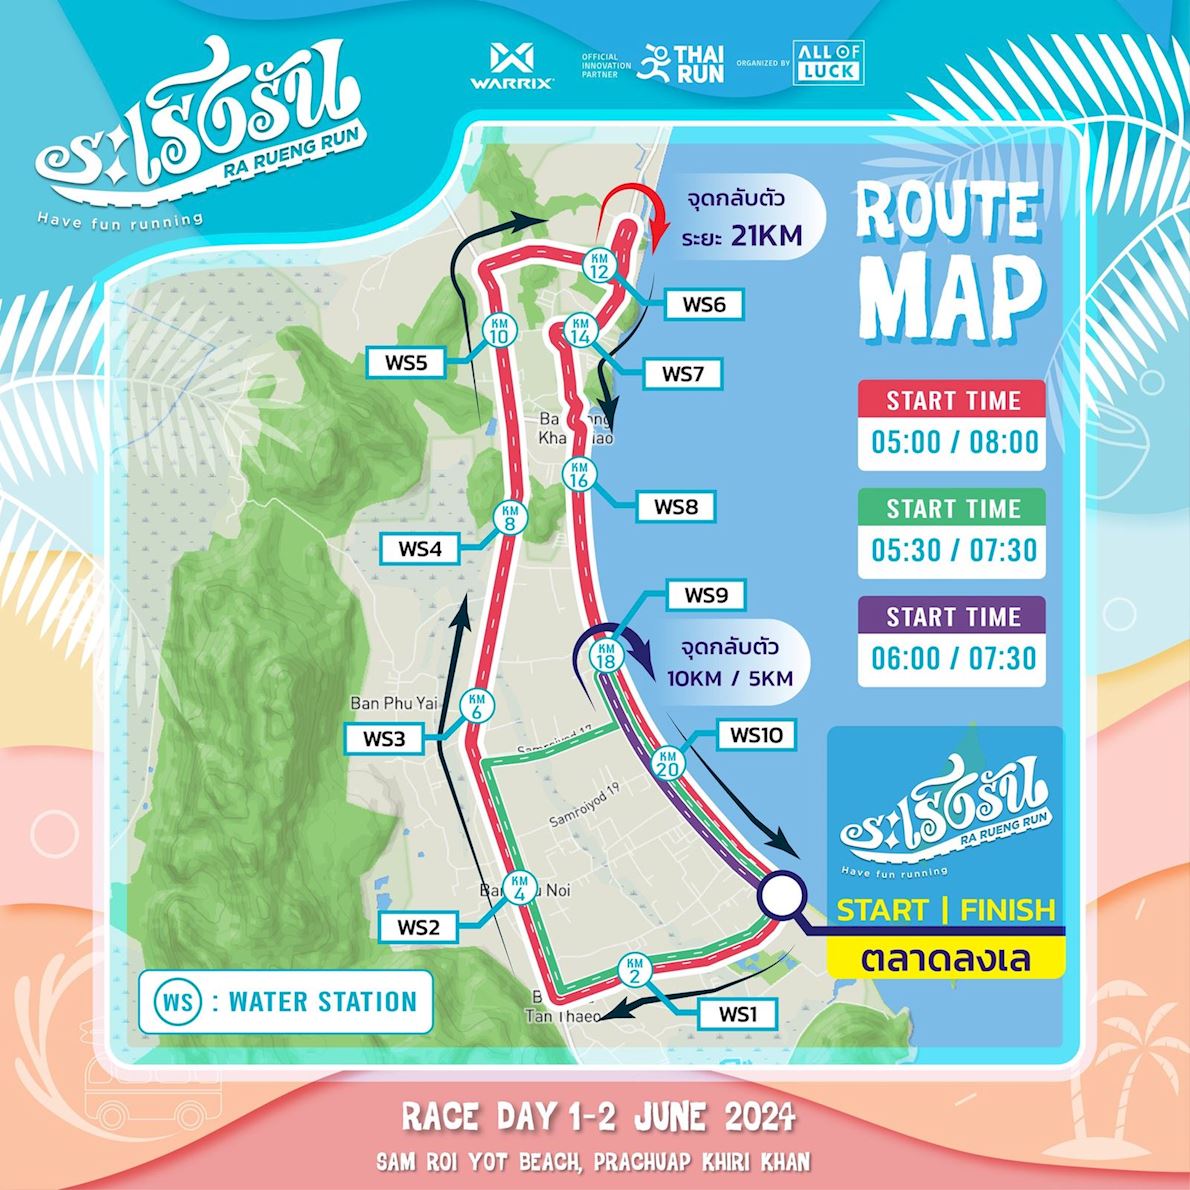 Ra Rueng Run Route Map